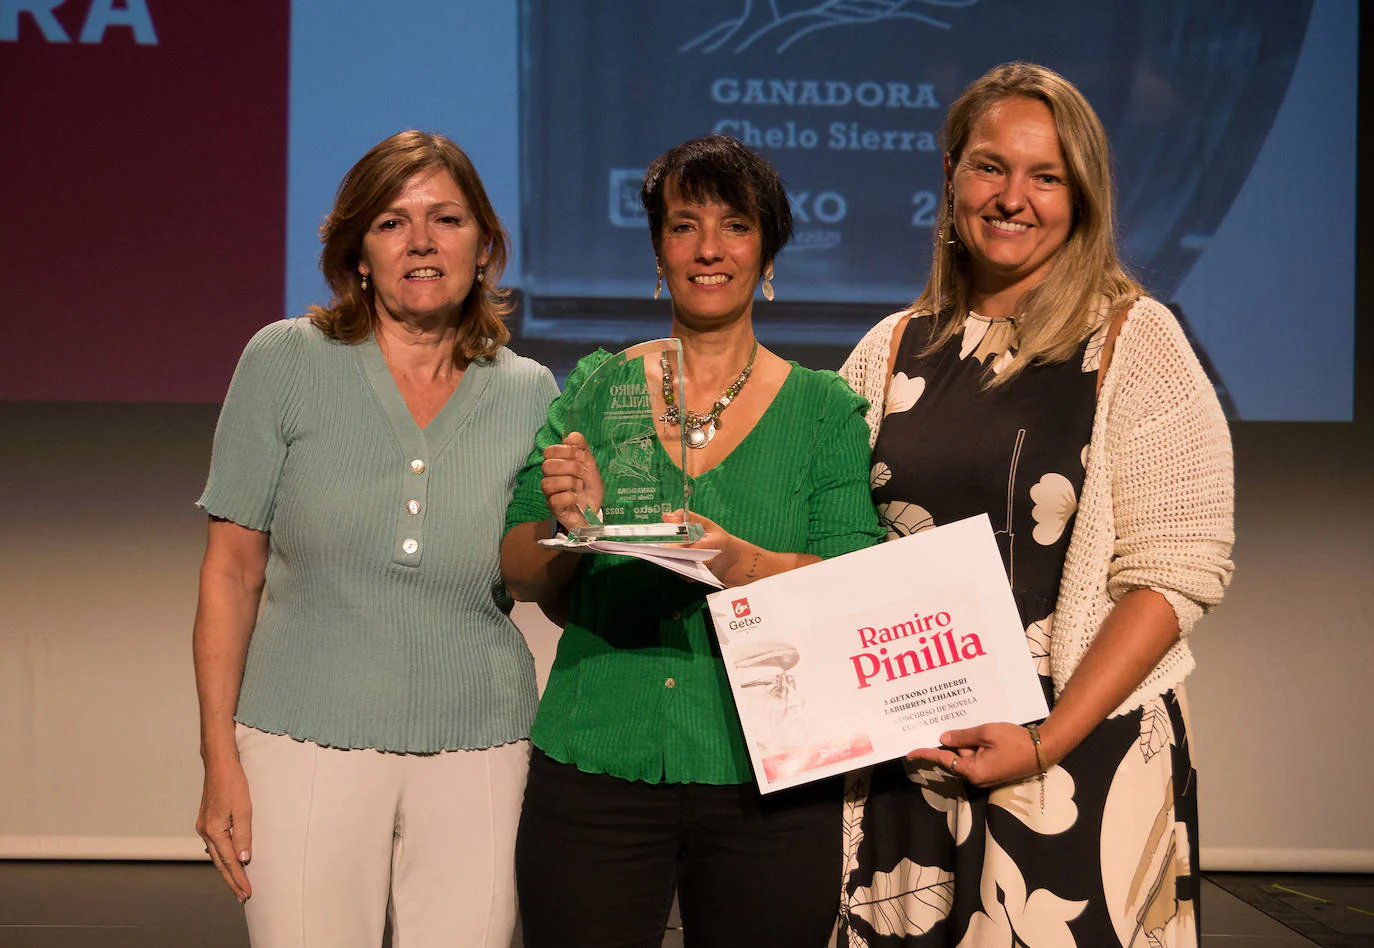 Chelo Sierra, en el centro, recibe el galardón a la mejor novela escrita en castellano.